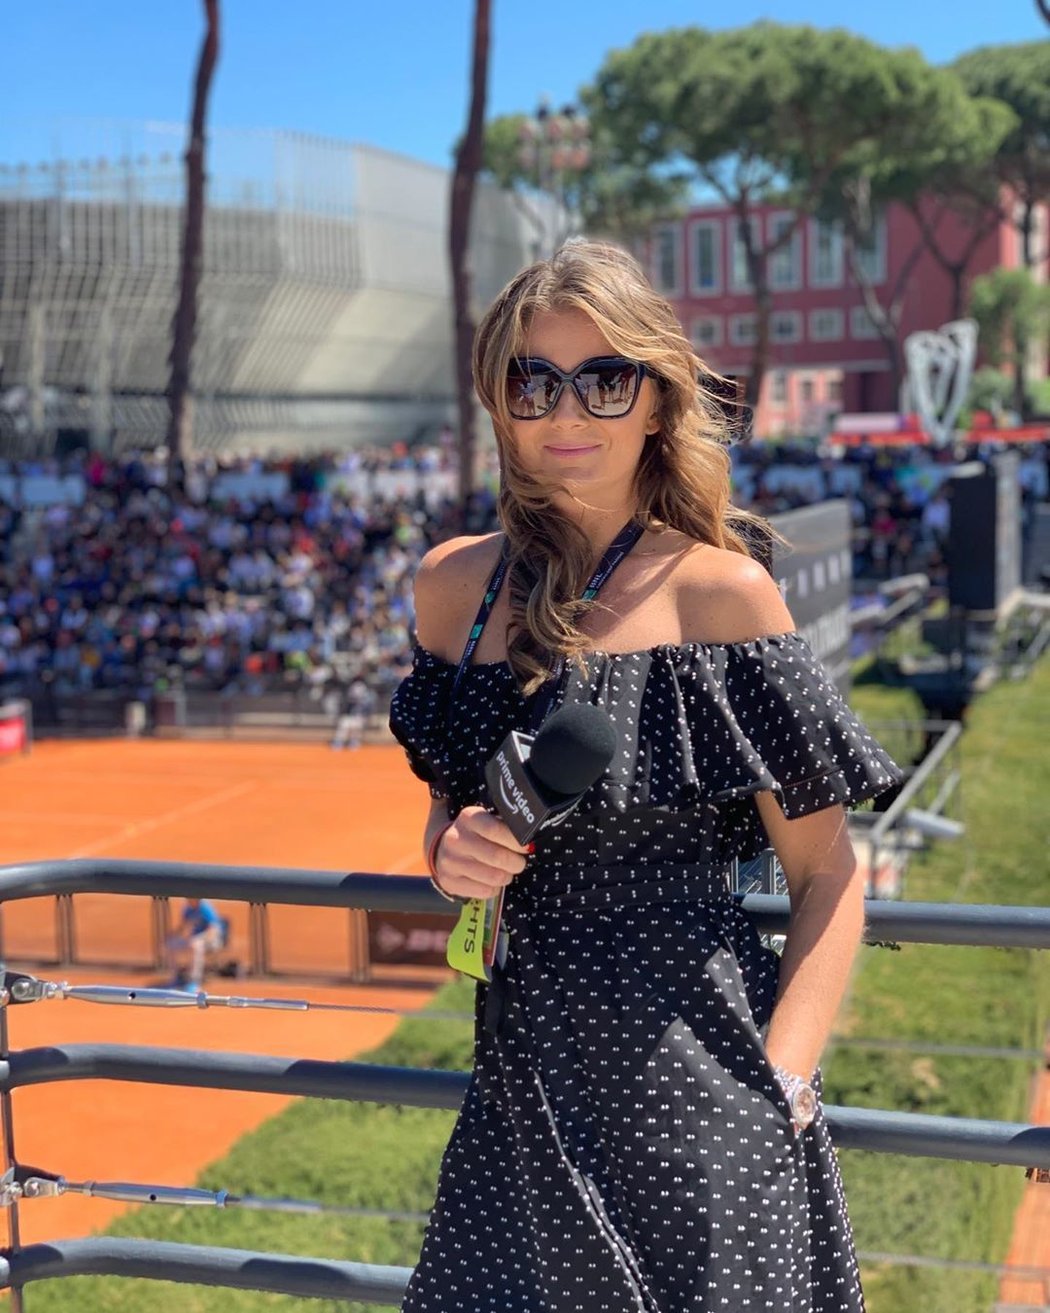 Půvabná Slovenka Daniela Hantuchová praštila s profesionálním tenisem před dvěma lety. Momentálně pracuje pro televizní společnosti jako expert!